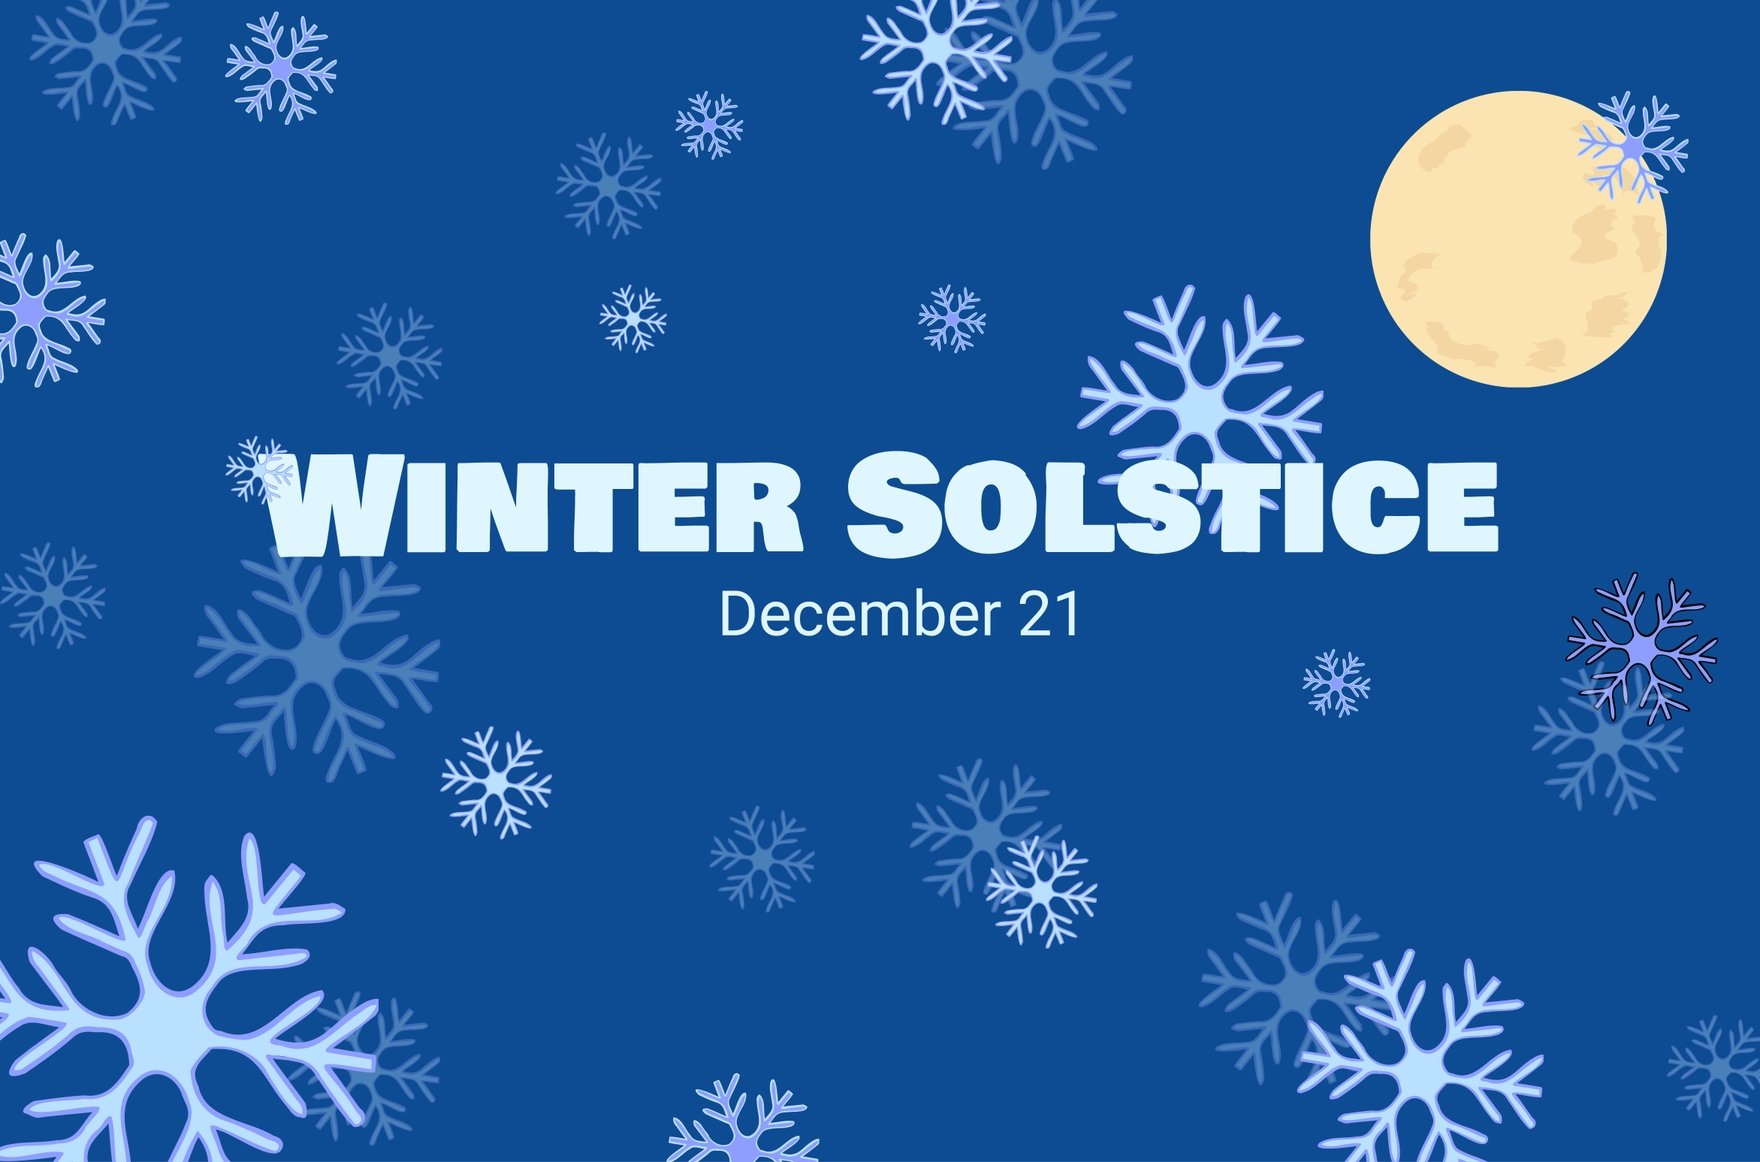 Winter Solstice Banner in Illustrator, PSD, EPS, SVG, JPG, PNG